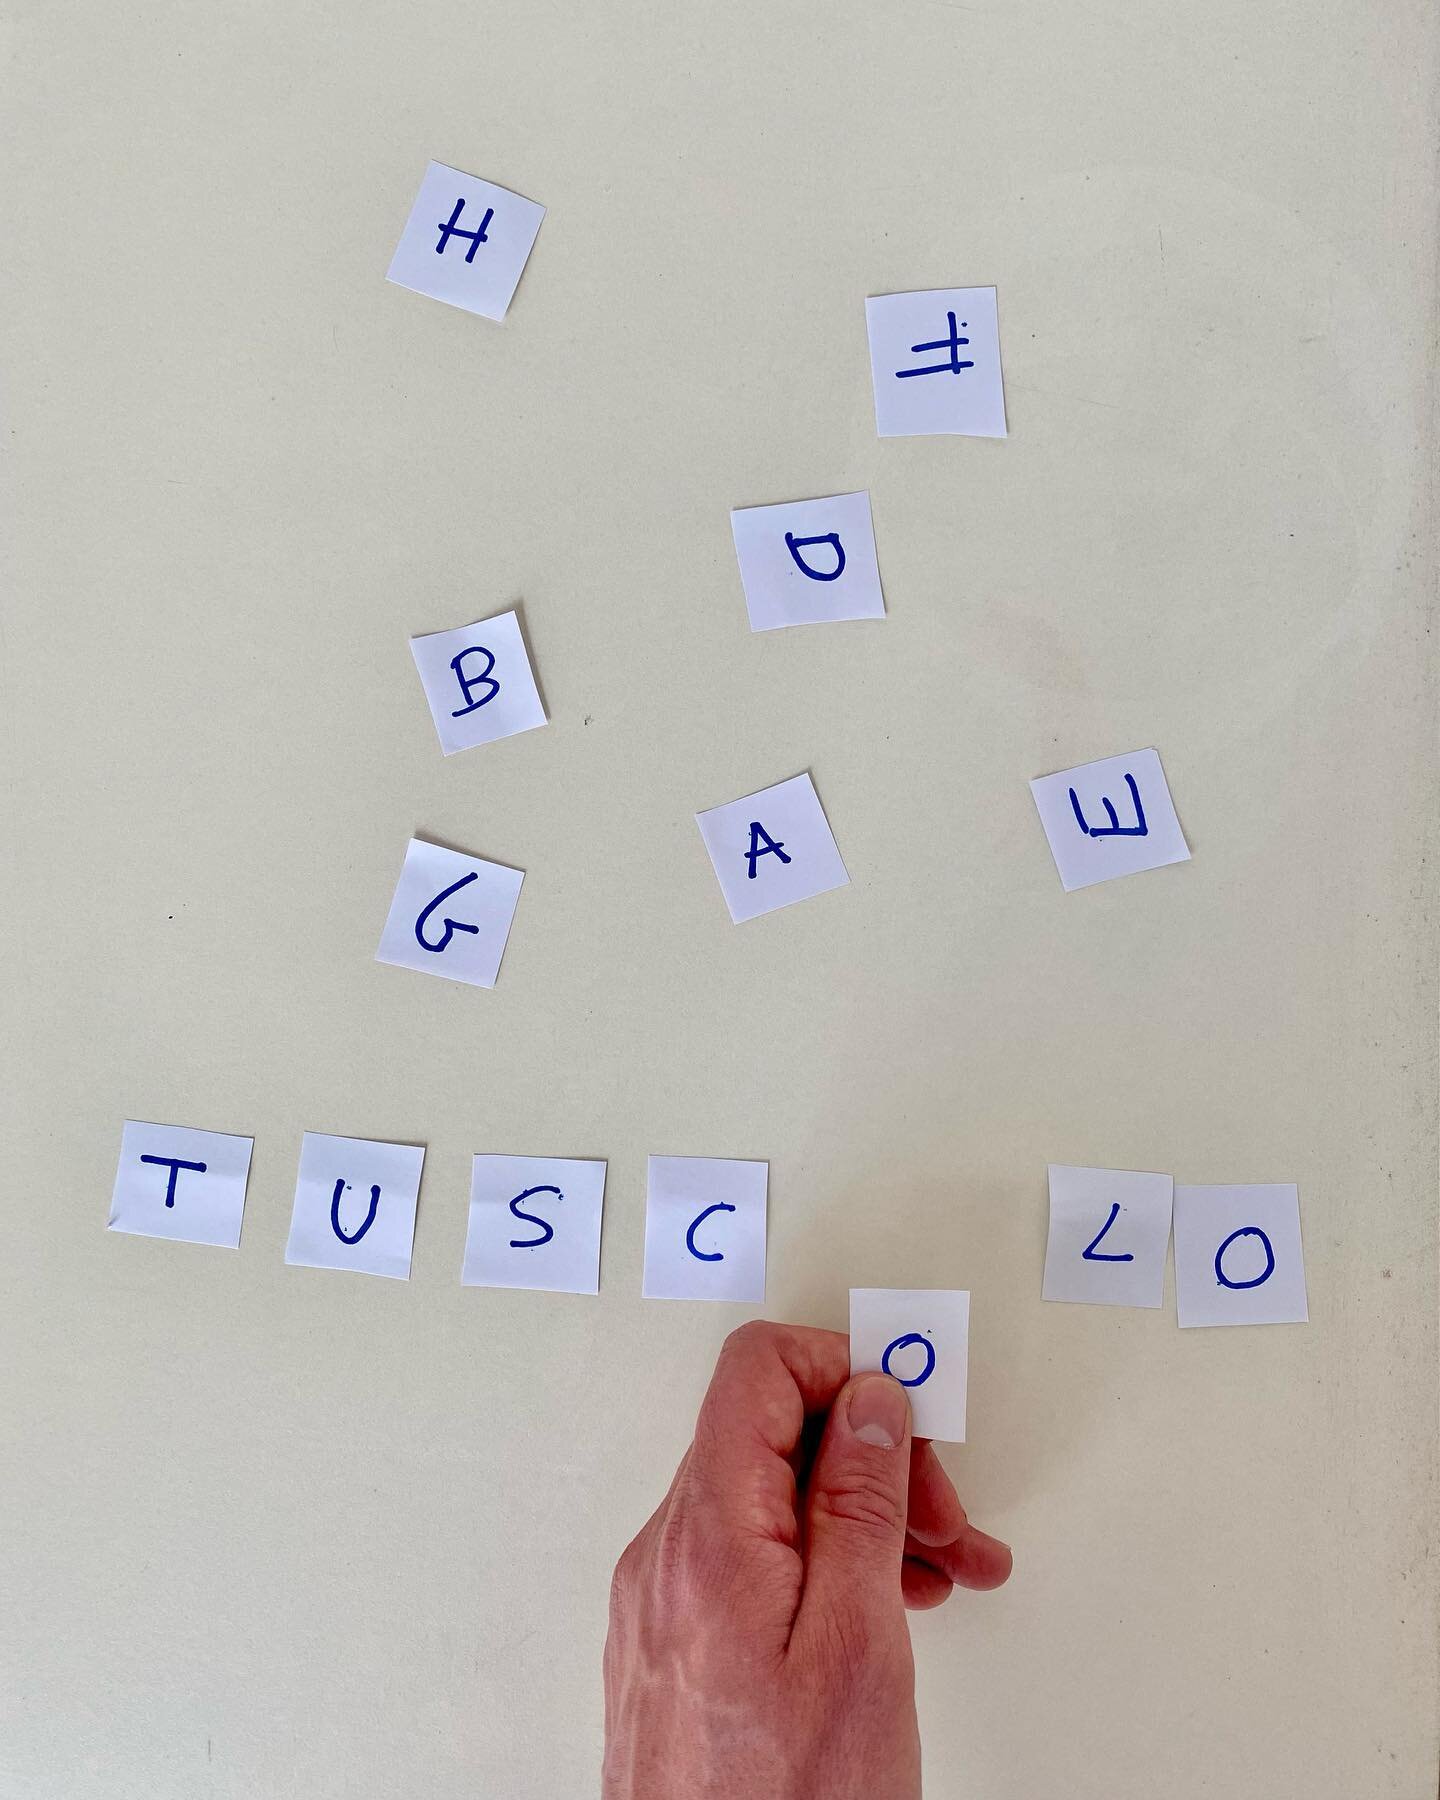 Componi la tua parola preferita. 

#tuscolo